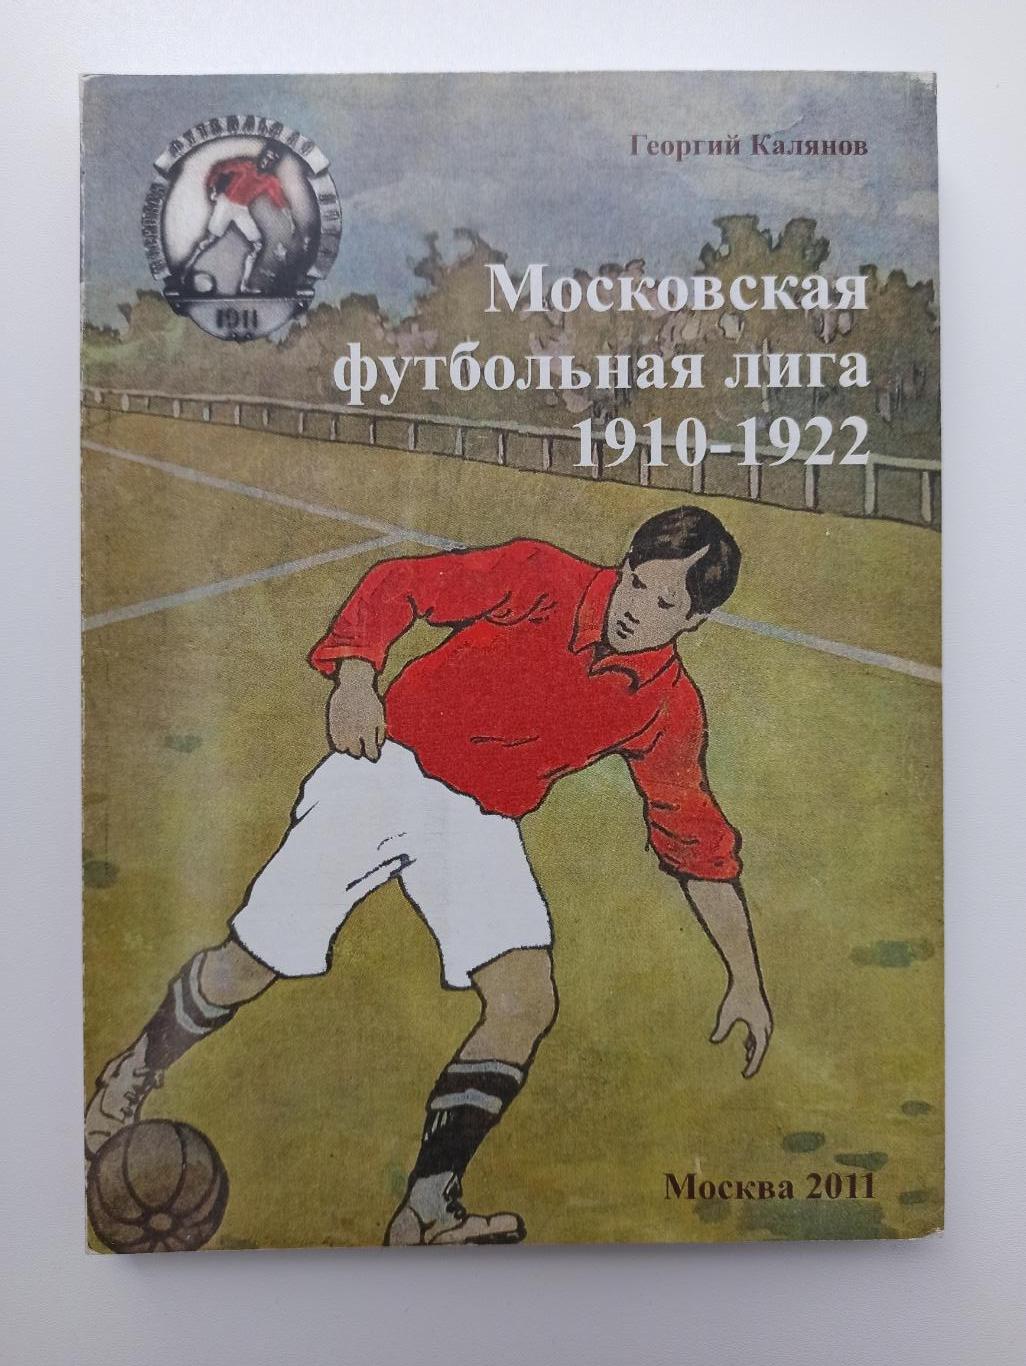 Футбол, Георгий Калянов, Московская футбольная лига 1910-1922, 1 издание